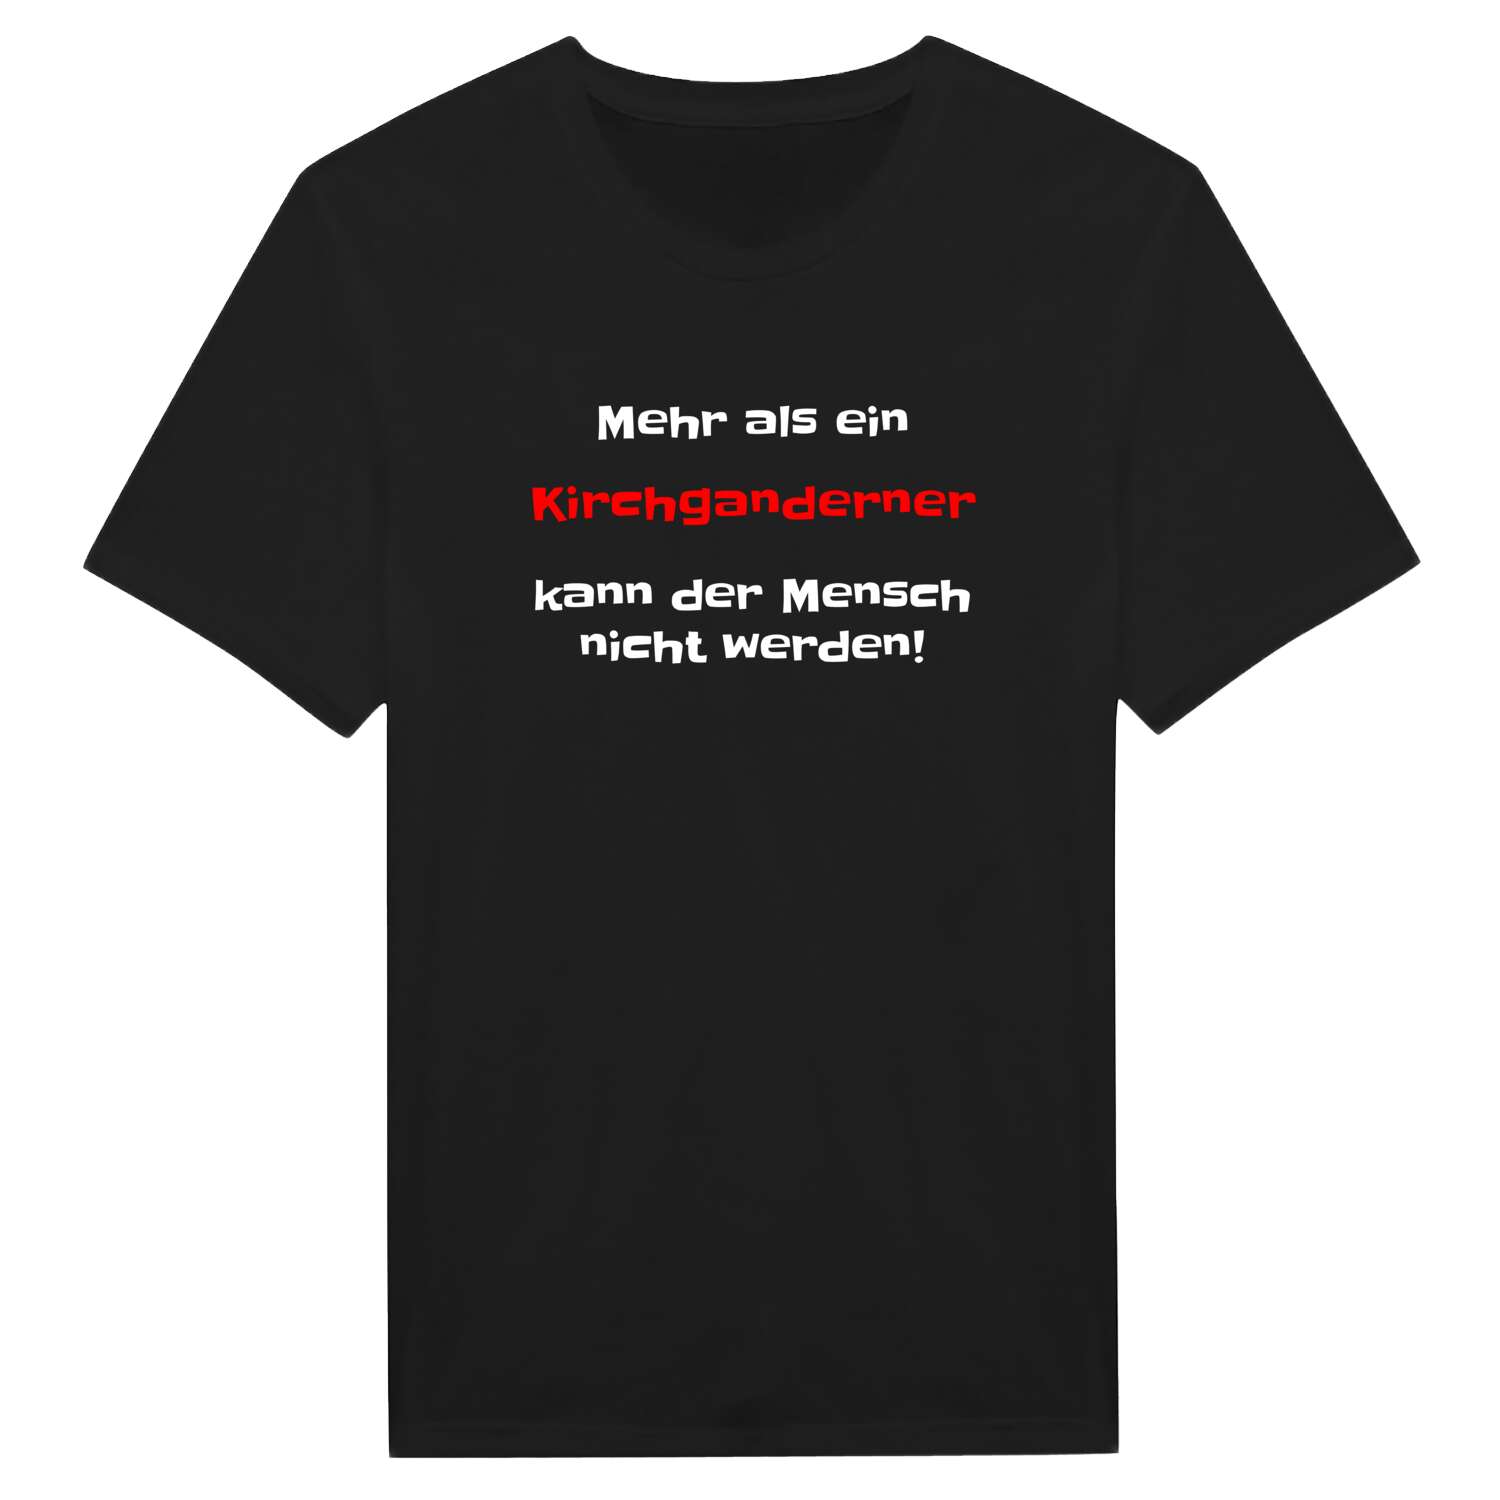 Kirchgandern T-Shirt »Mehr als ein«